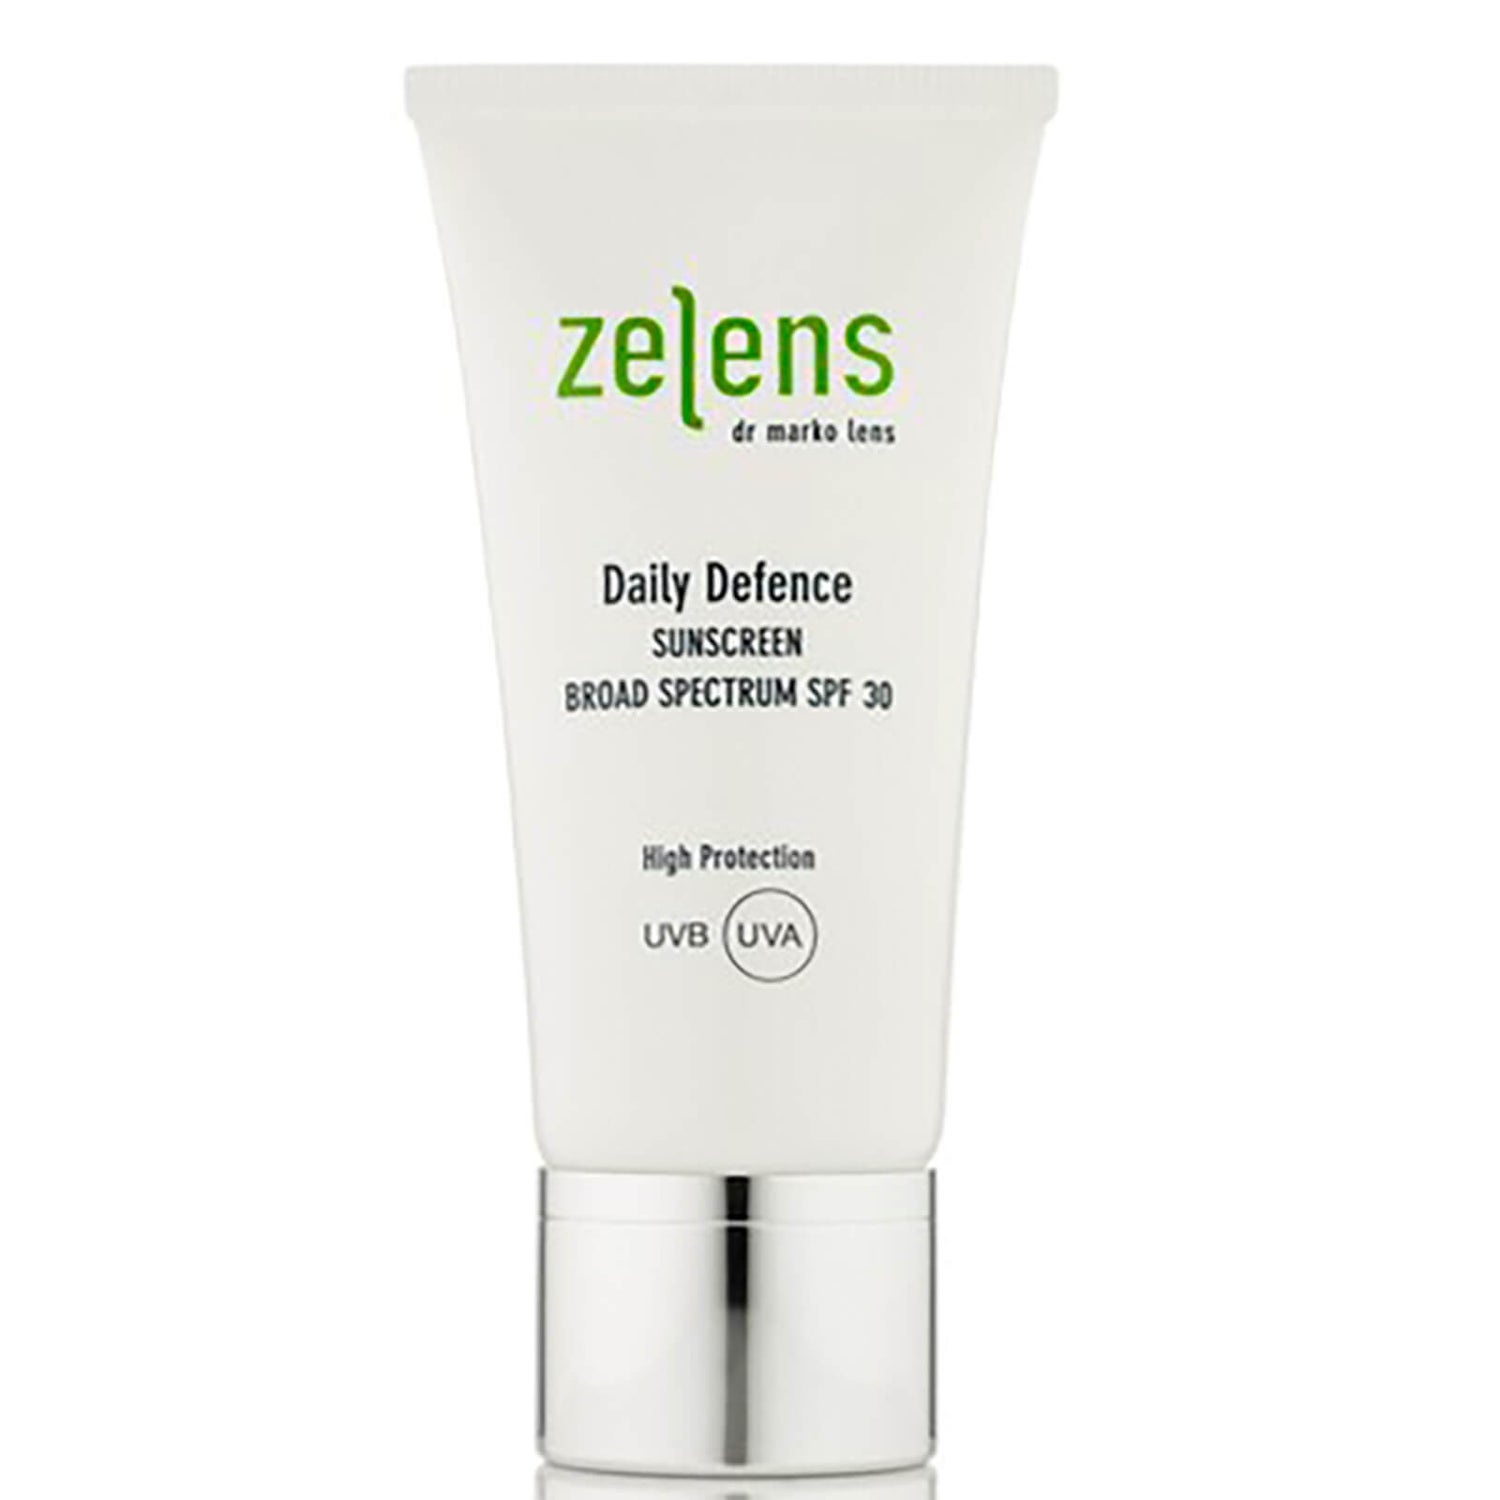 젤렌스 데일리 디펜스 썬스크린 Spf30 (Zelens Daily Defence Sunscreen Spf 30) (50Ml) |  룩판타스틱 코리아 해외직구